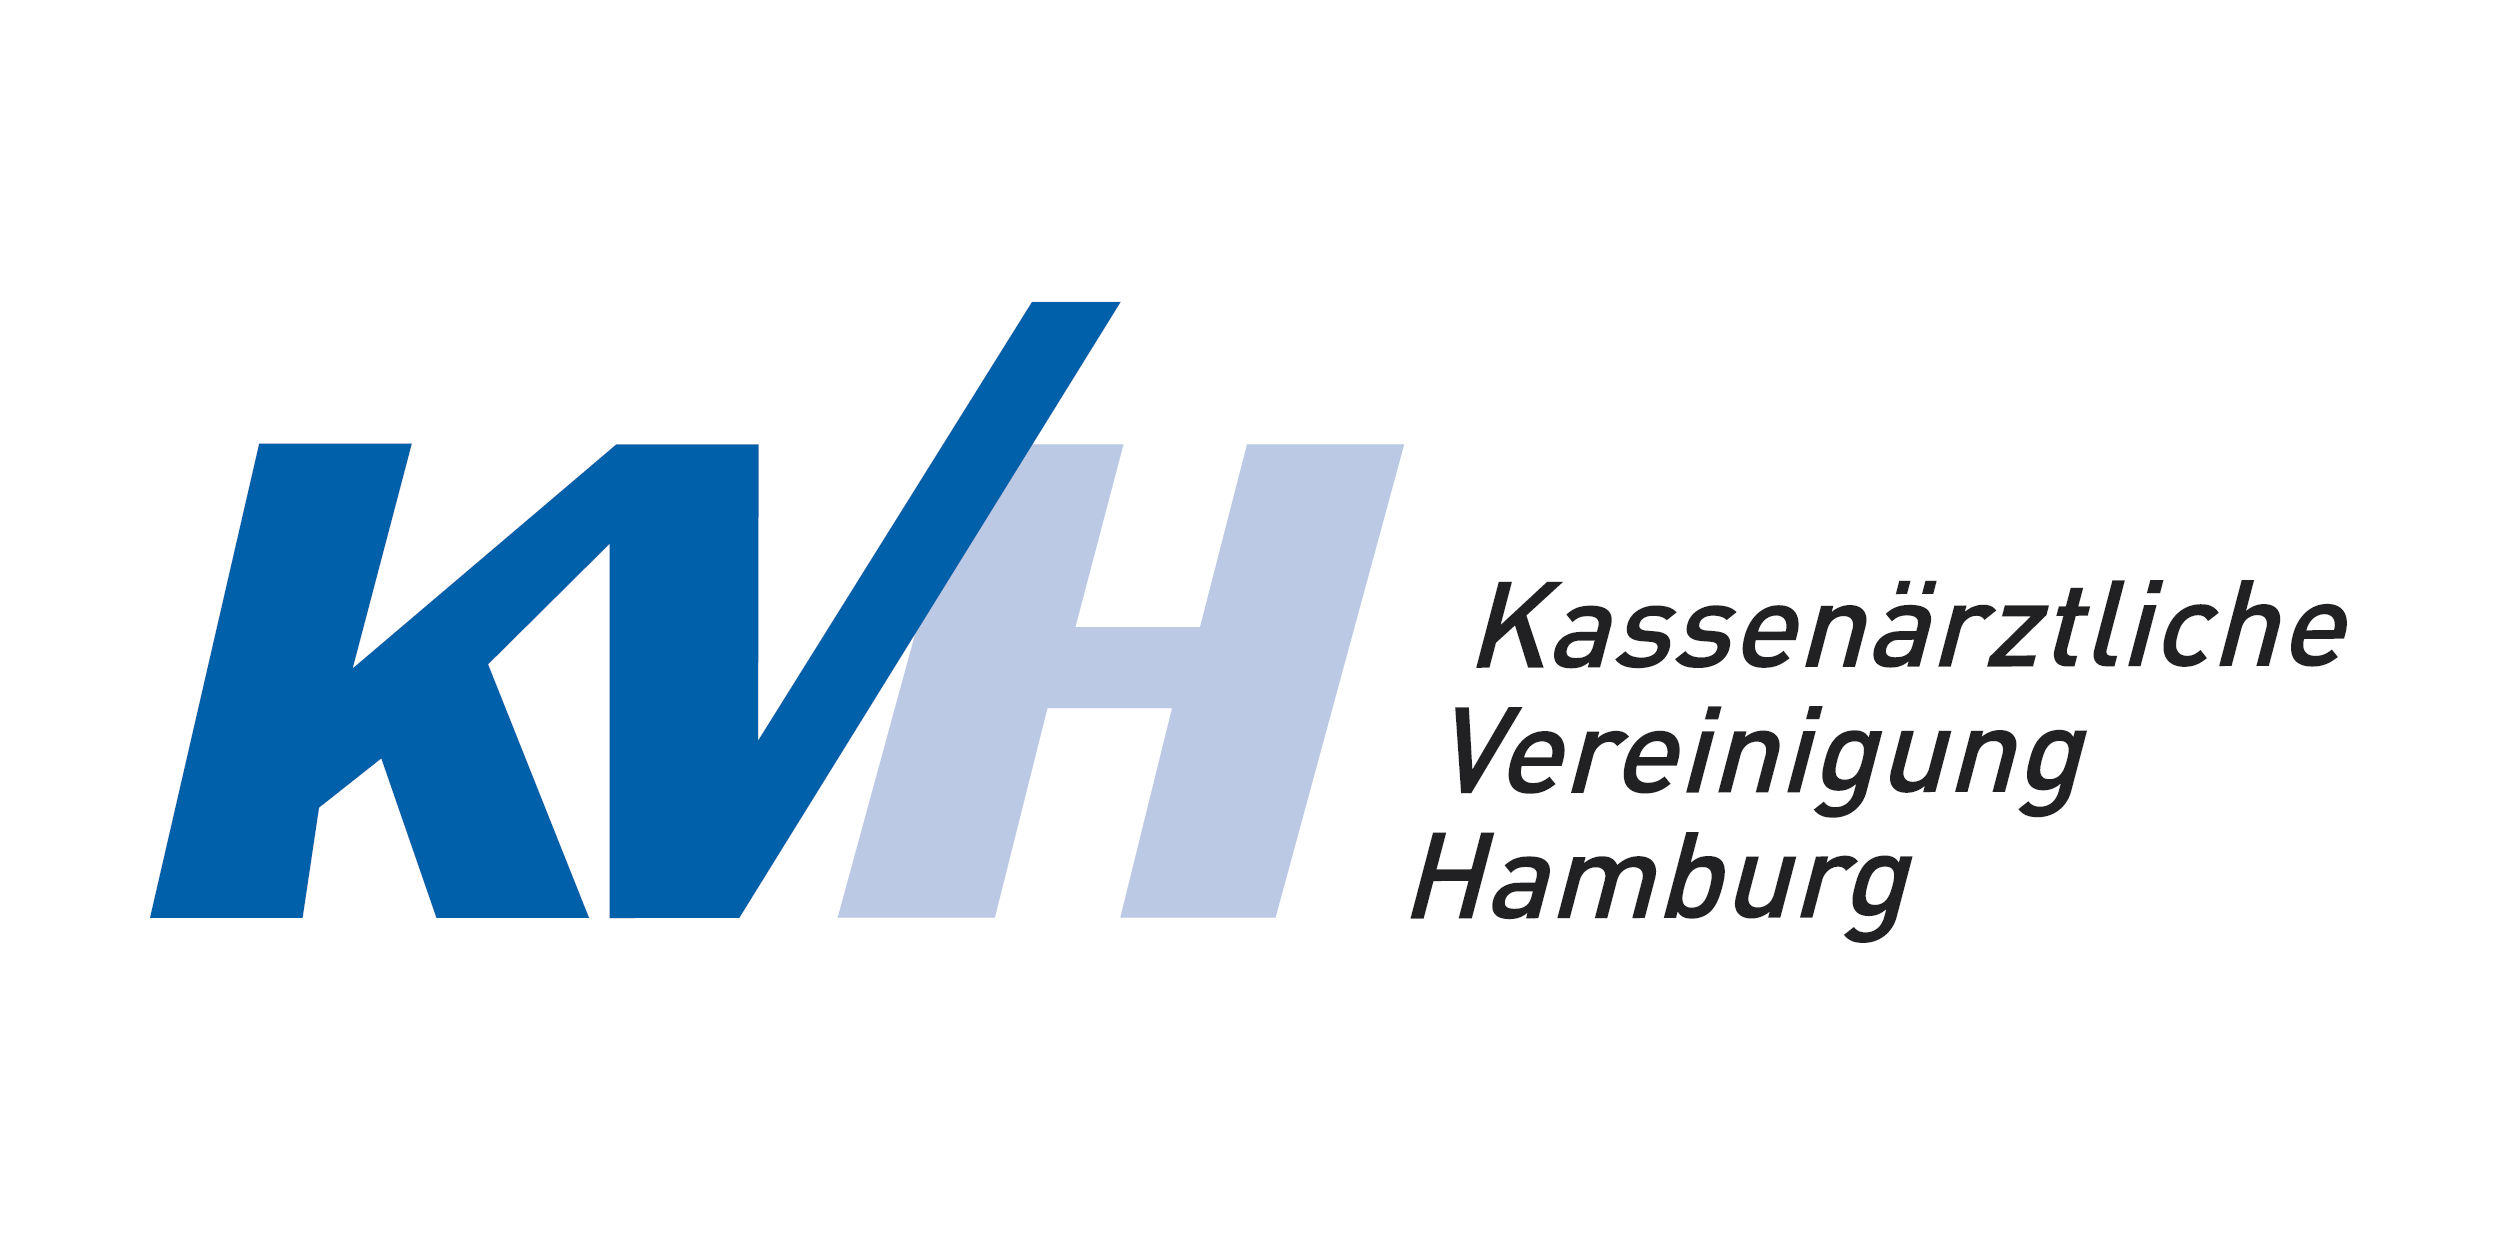 Das Bild zeigt das Logo der KV Hamburg.